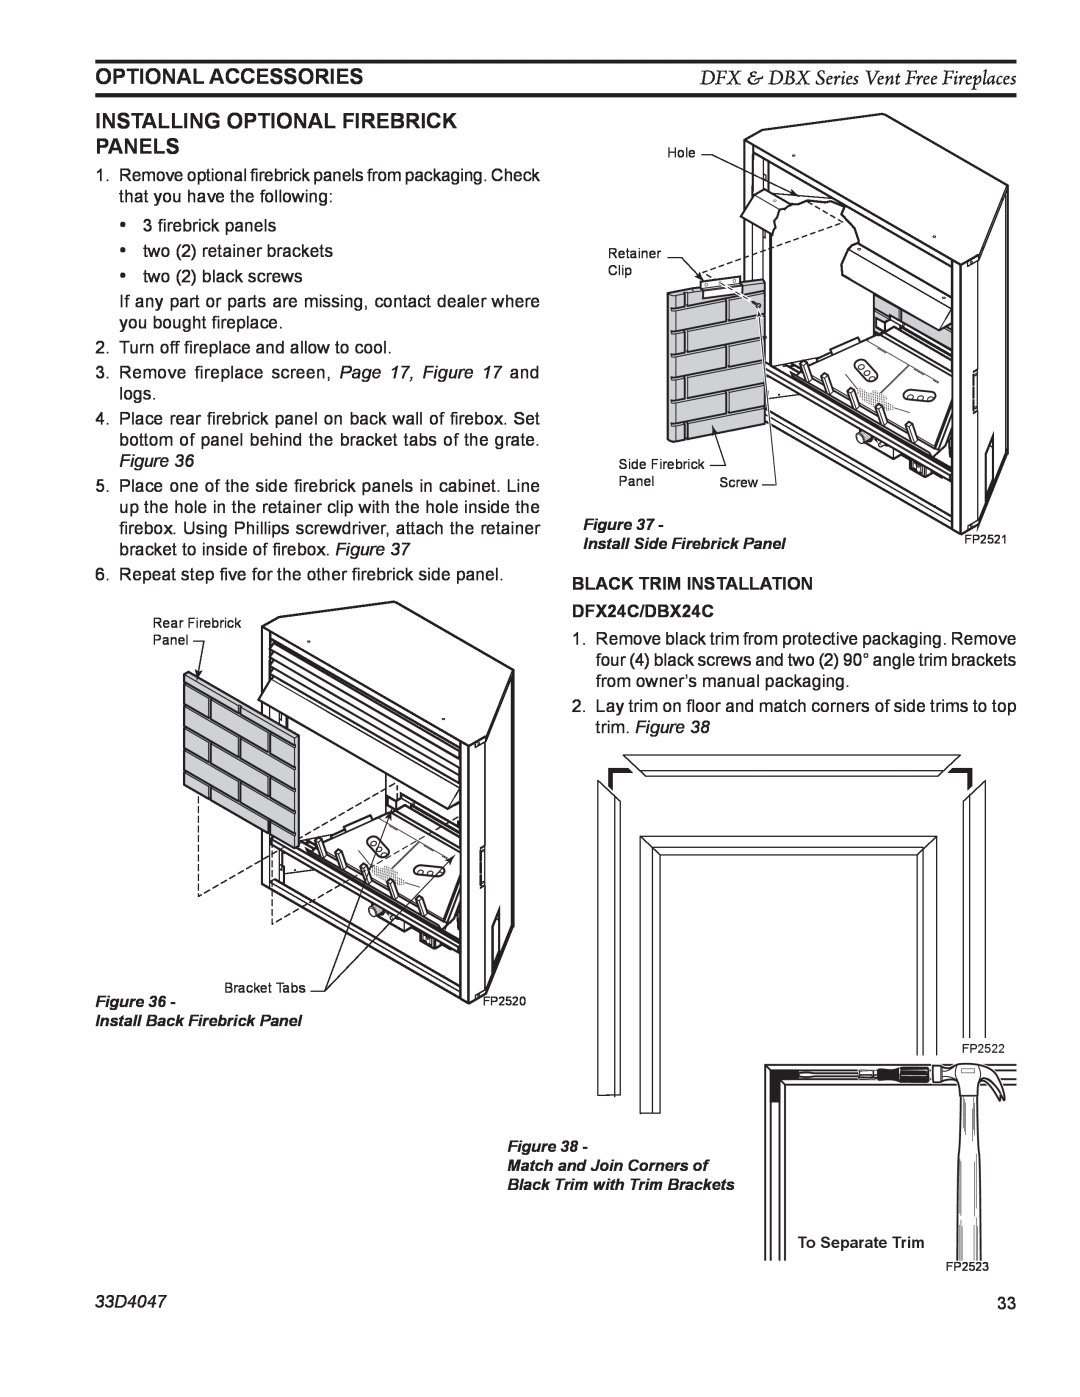 Monessen Hearth DBX24C manual Optional Accessories, DFX & DBX Series Vent Free Fireplaces, trim. Figure, 33D4047 